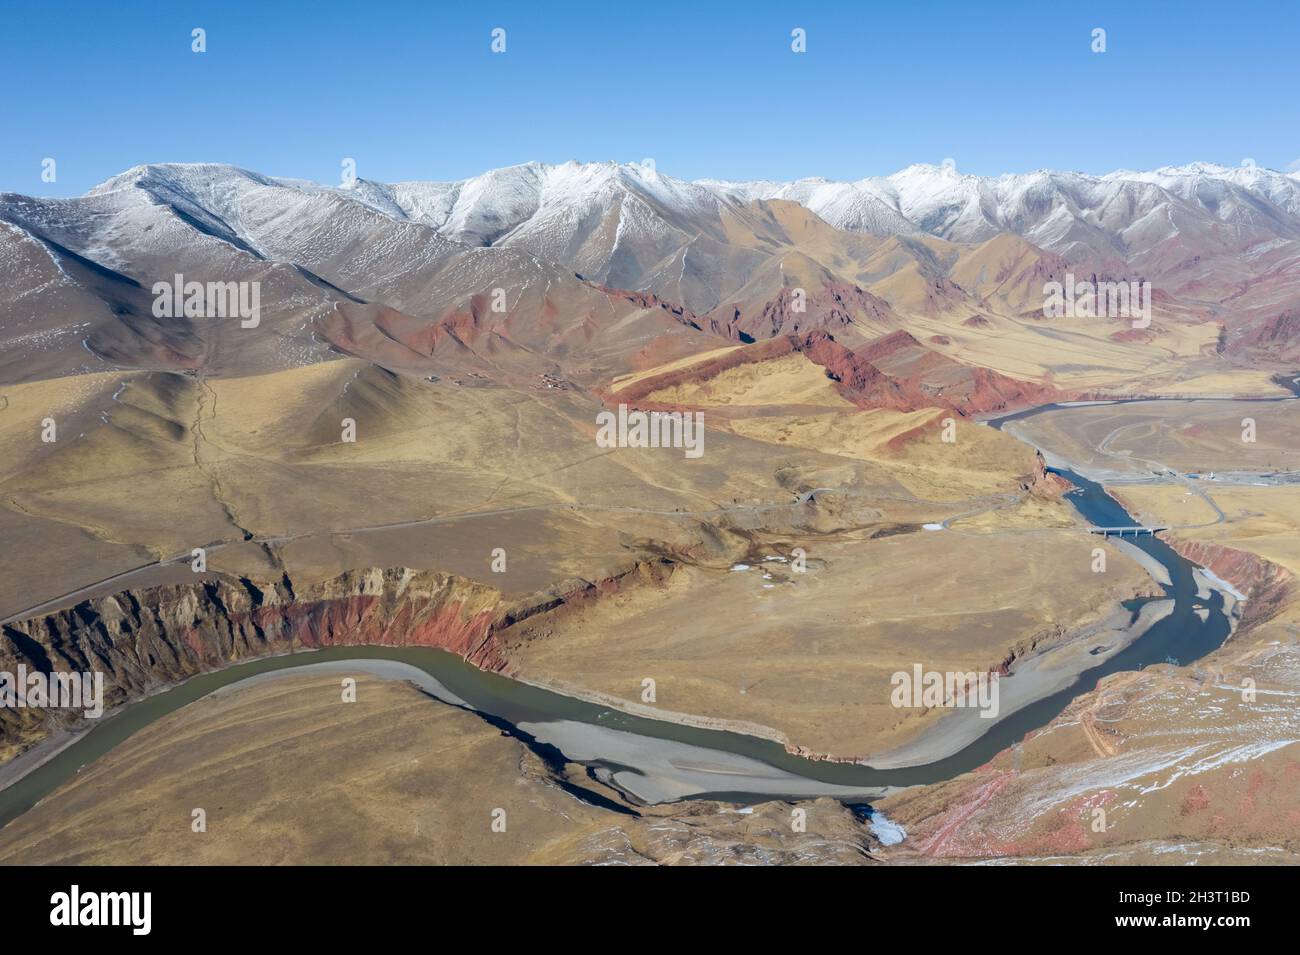 Vue aérienne de la rivière nujiang avec les montagnes de tanggula Banque D'Images